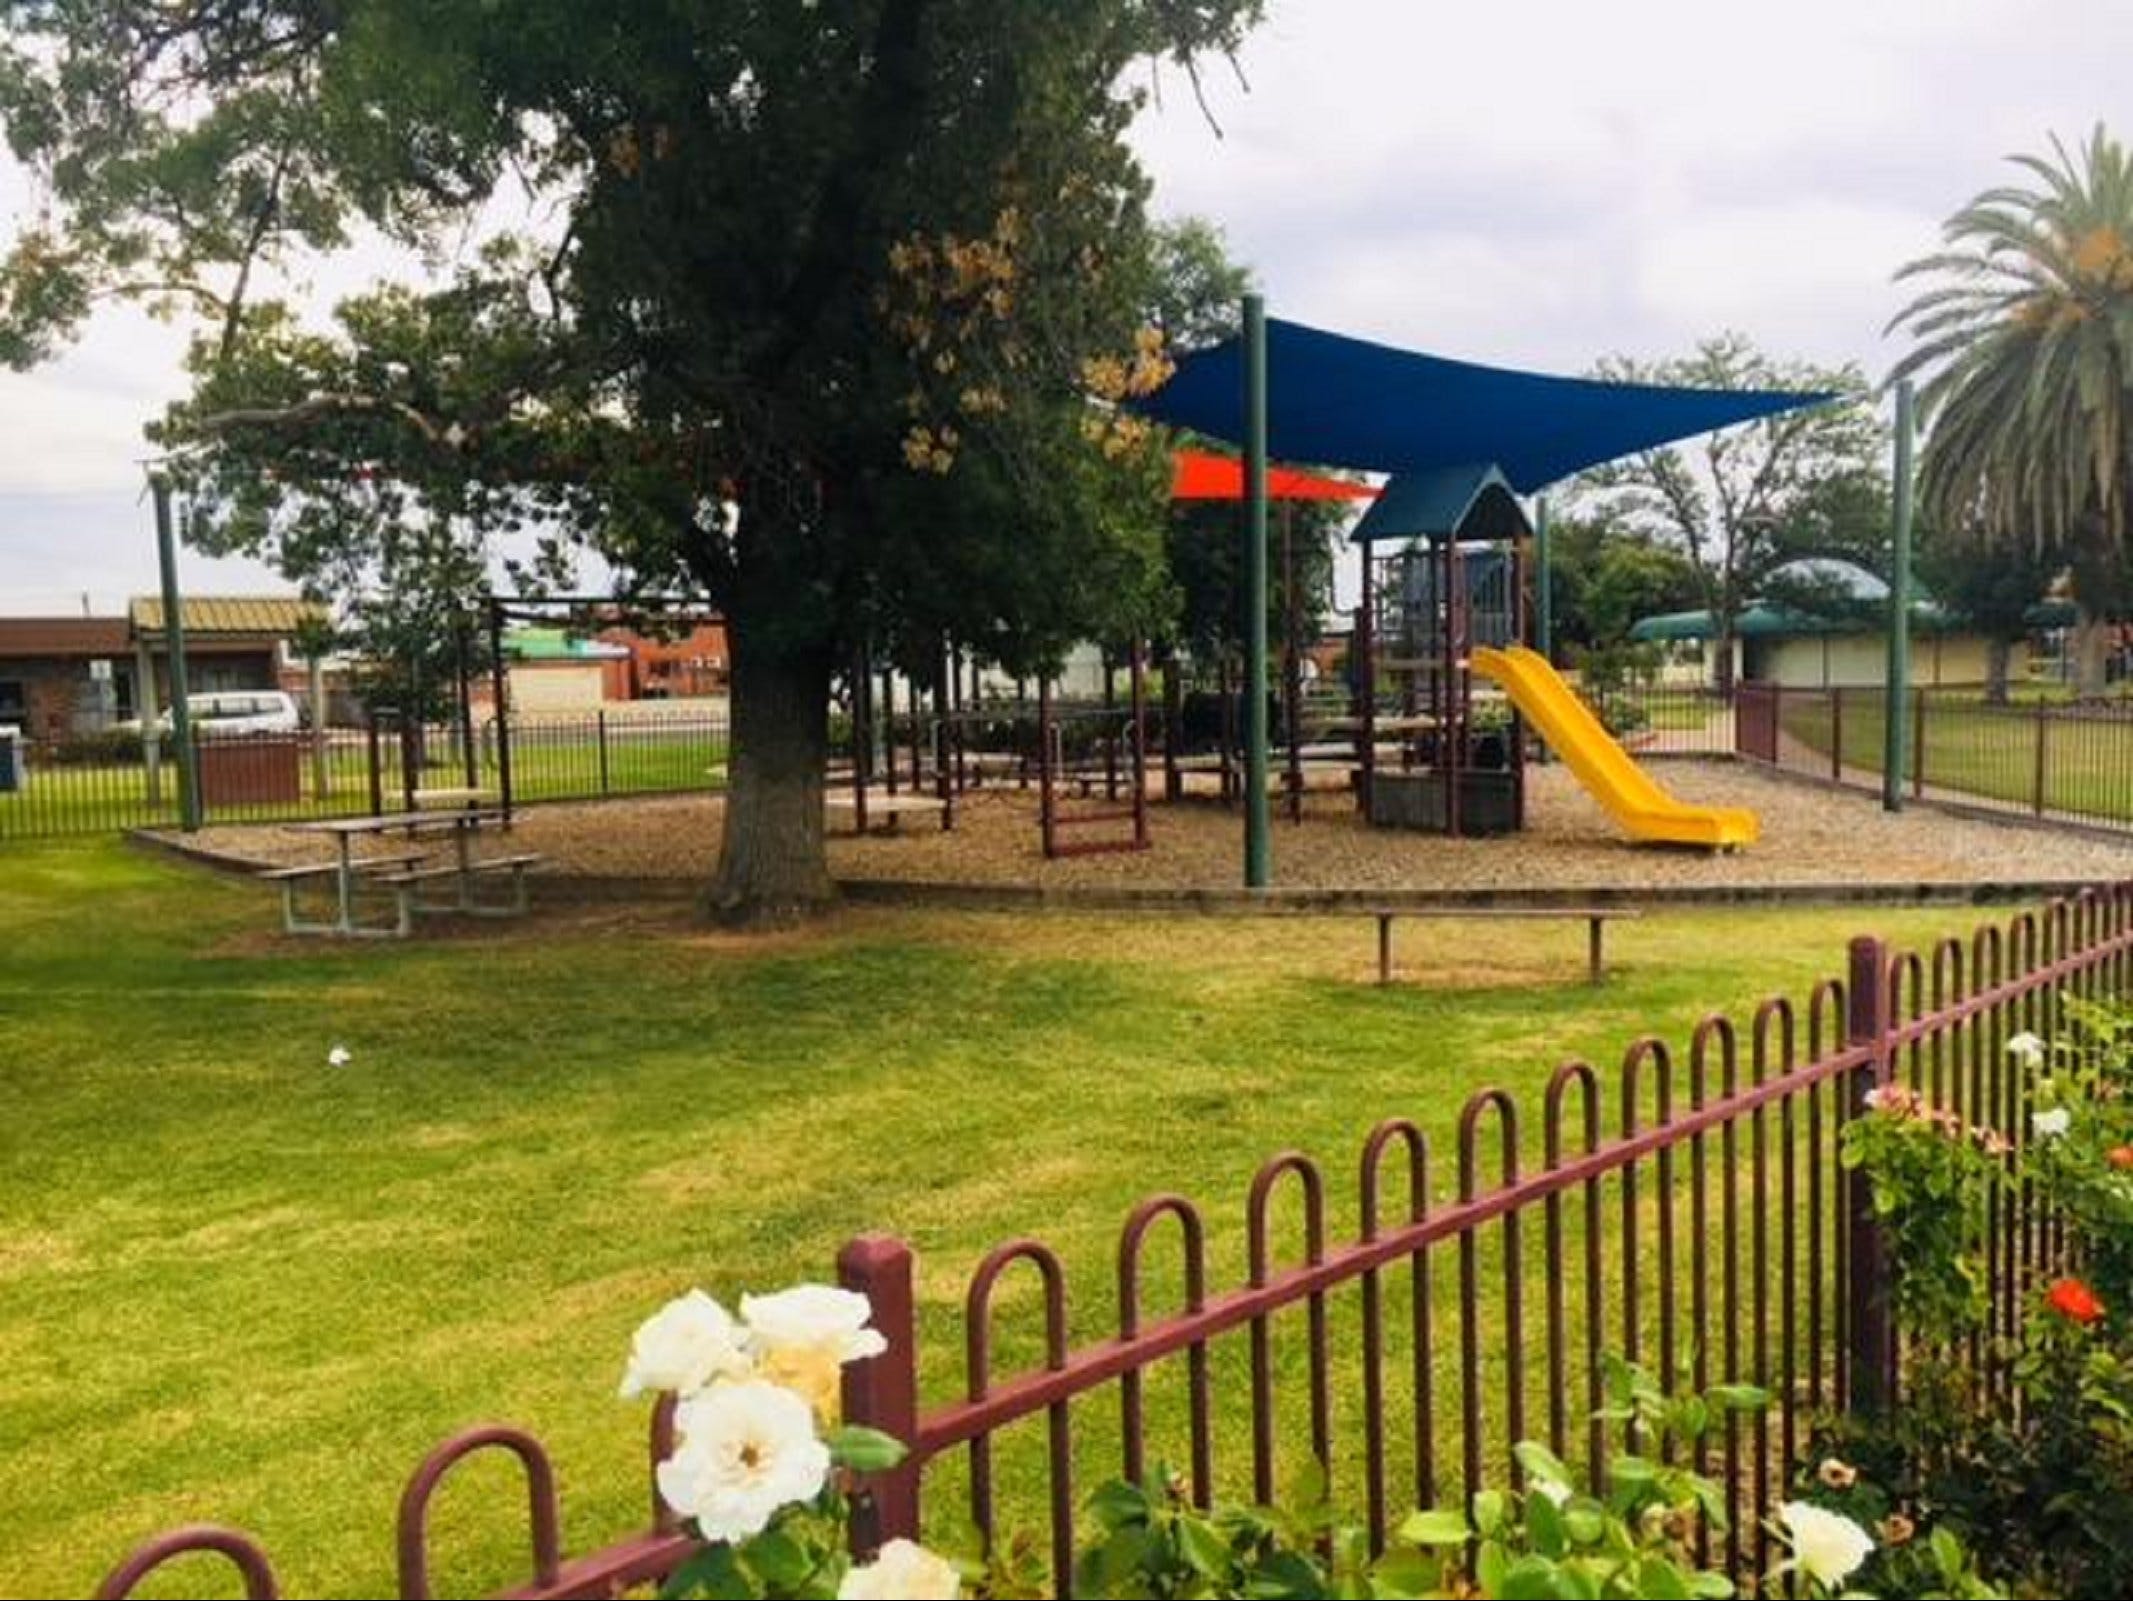 Cobram Mivo Park and Playground - Accommodation Mount Tamborine